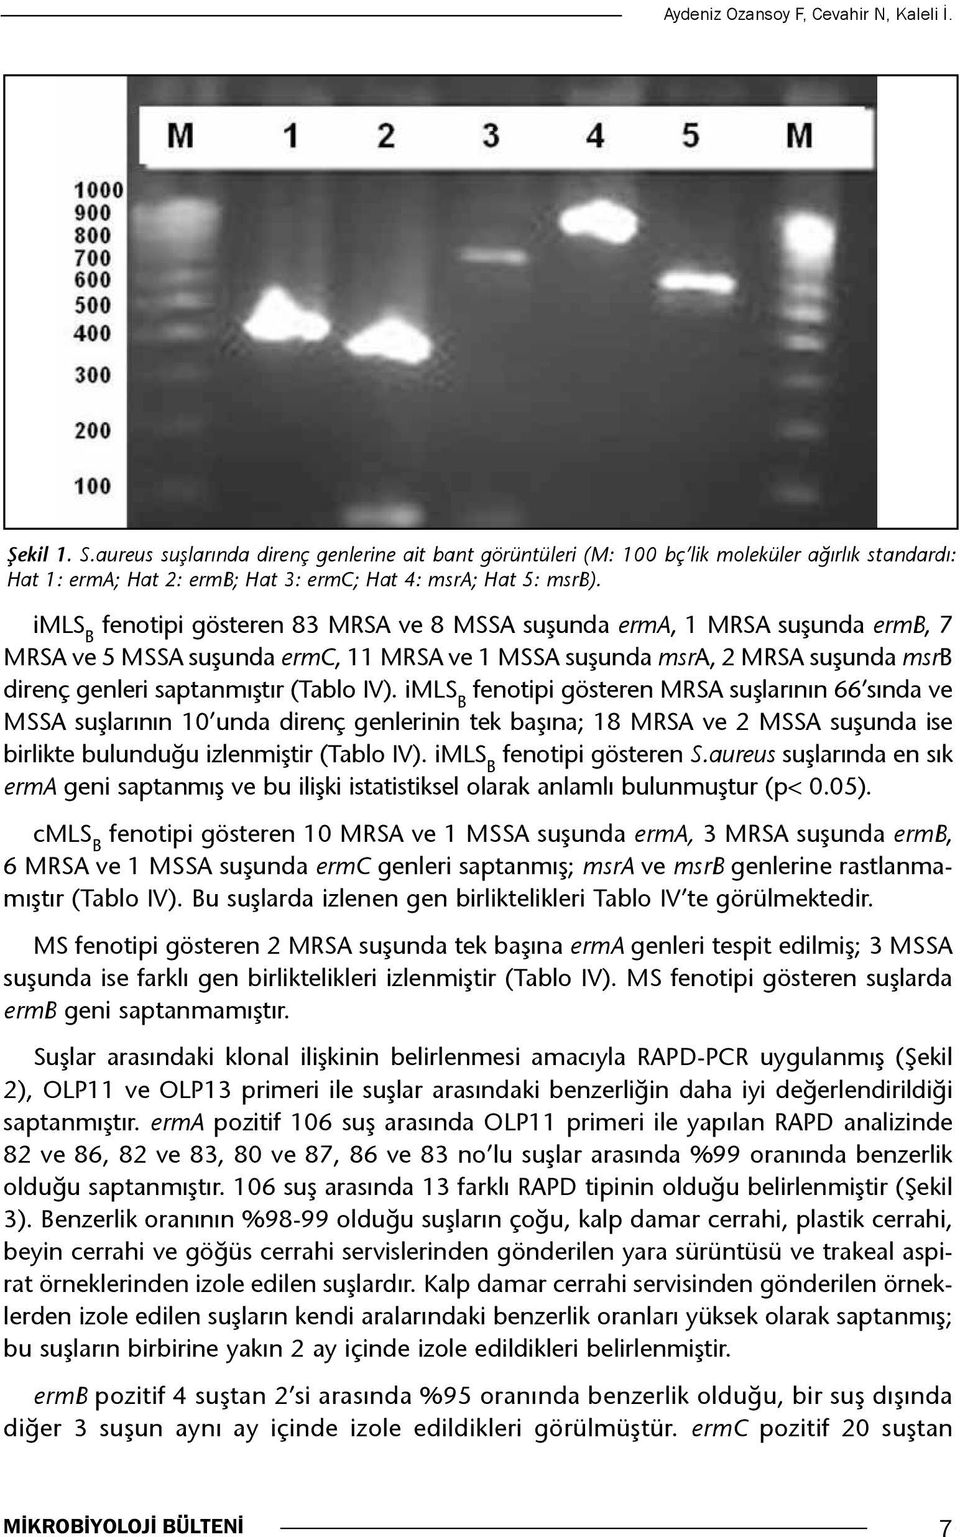 imls B fenotipi gösteren 83 MRSA ve 8 MSSA suşunda erma, 1 MRSA suşunda ermb, 7 MRSA ve 5 MSSA suşunda ermc, 11 MRSA ve 1 MSSA suşunda msra, 2 MRSA suşunda msrb direnç genleri saptanmıştır (Tablo IV).